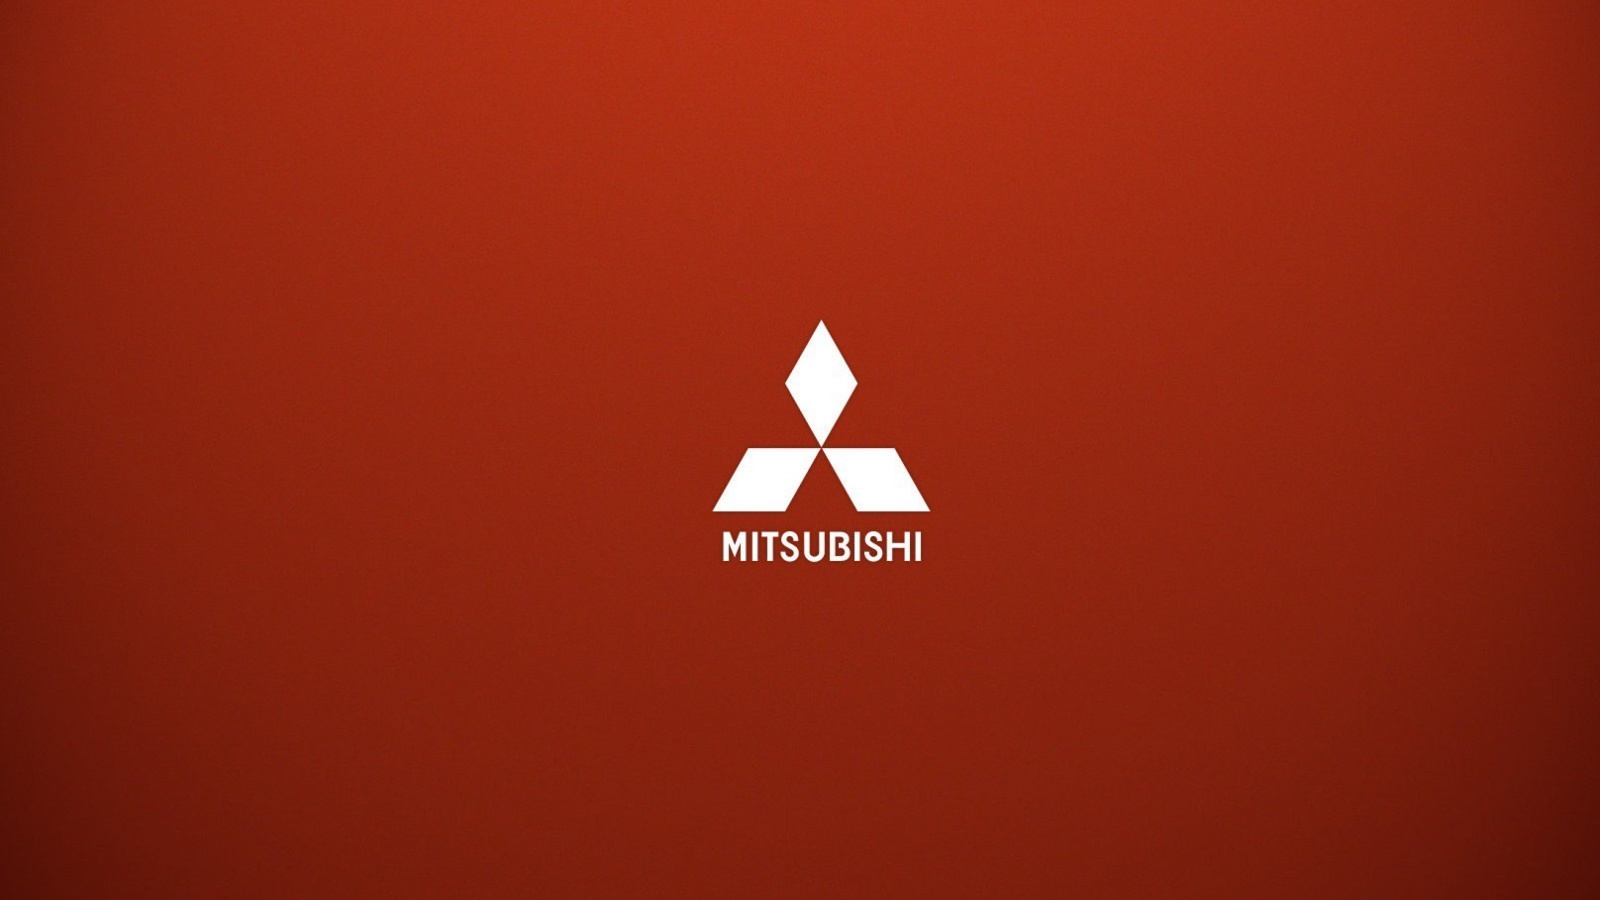 Mitsubishi logo wallpaper 1600x900